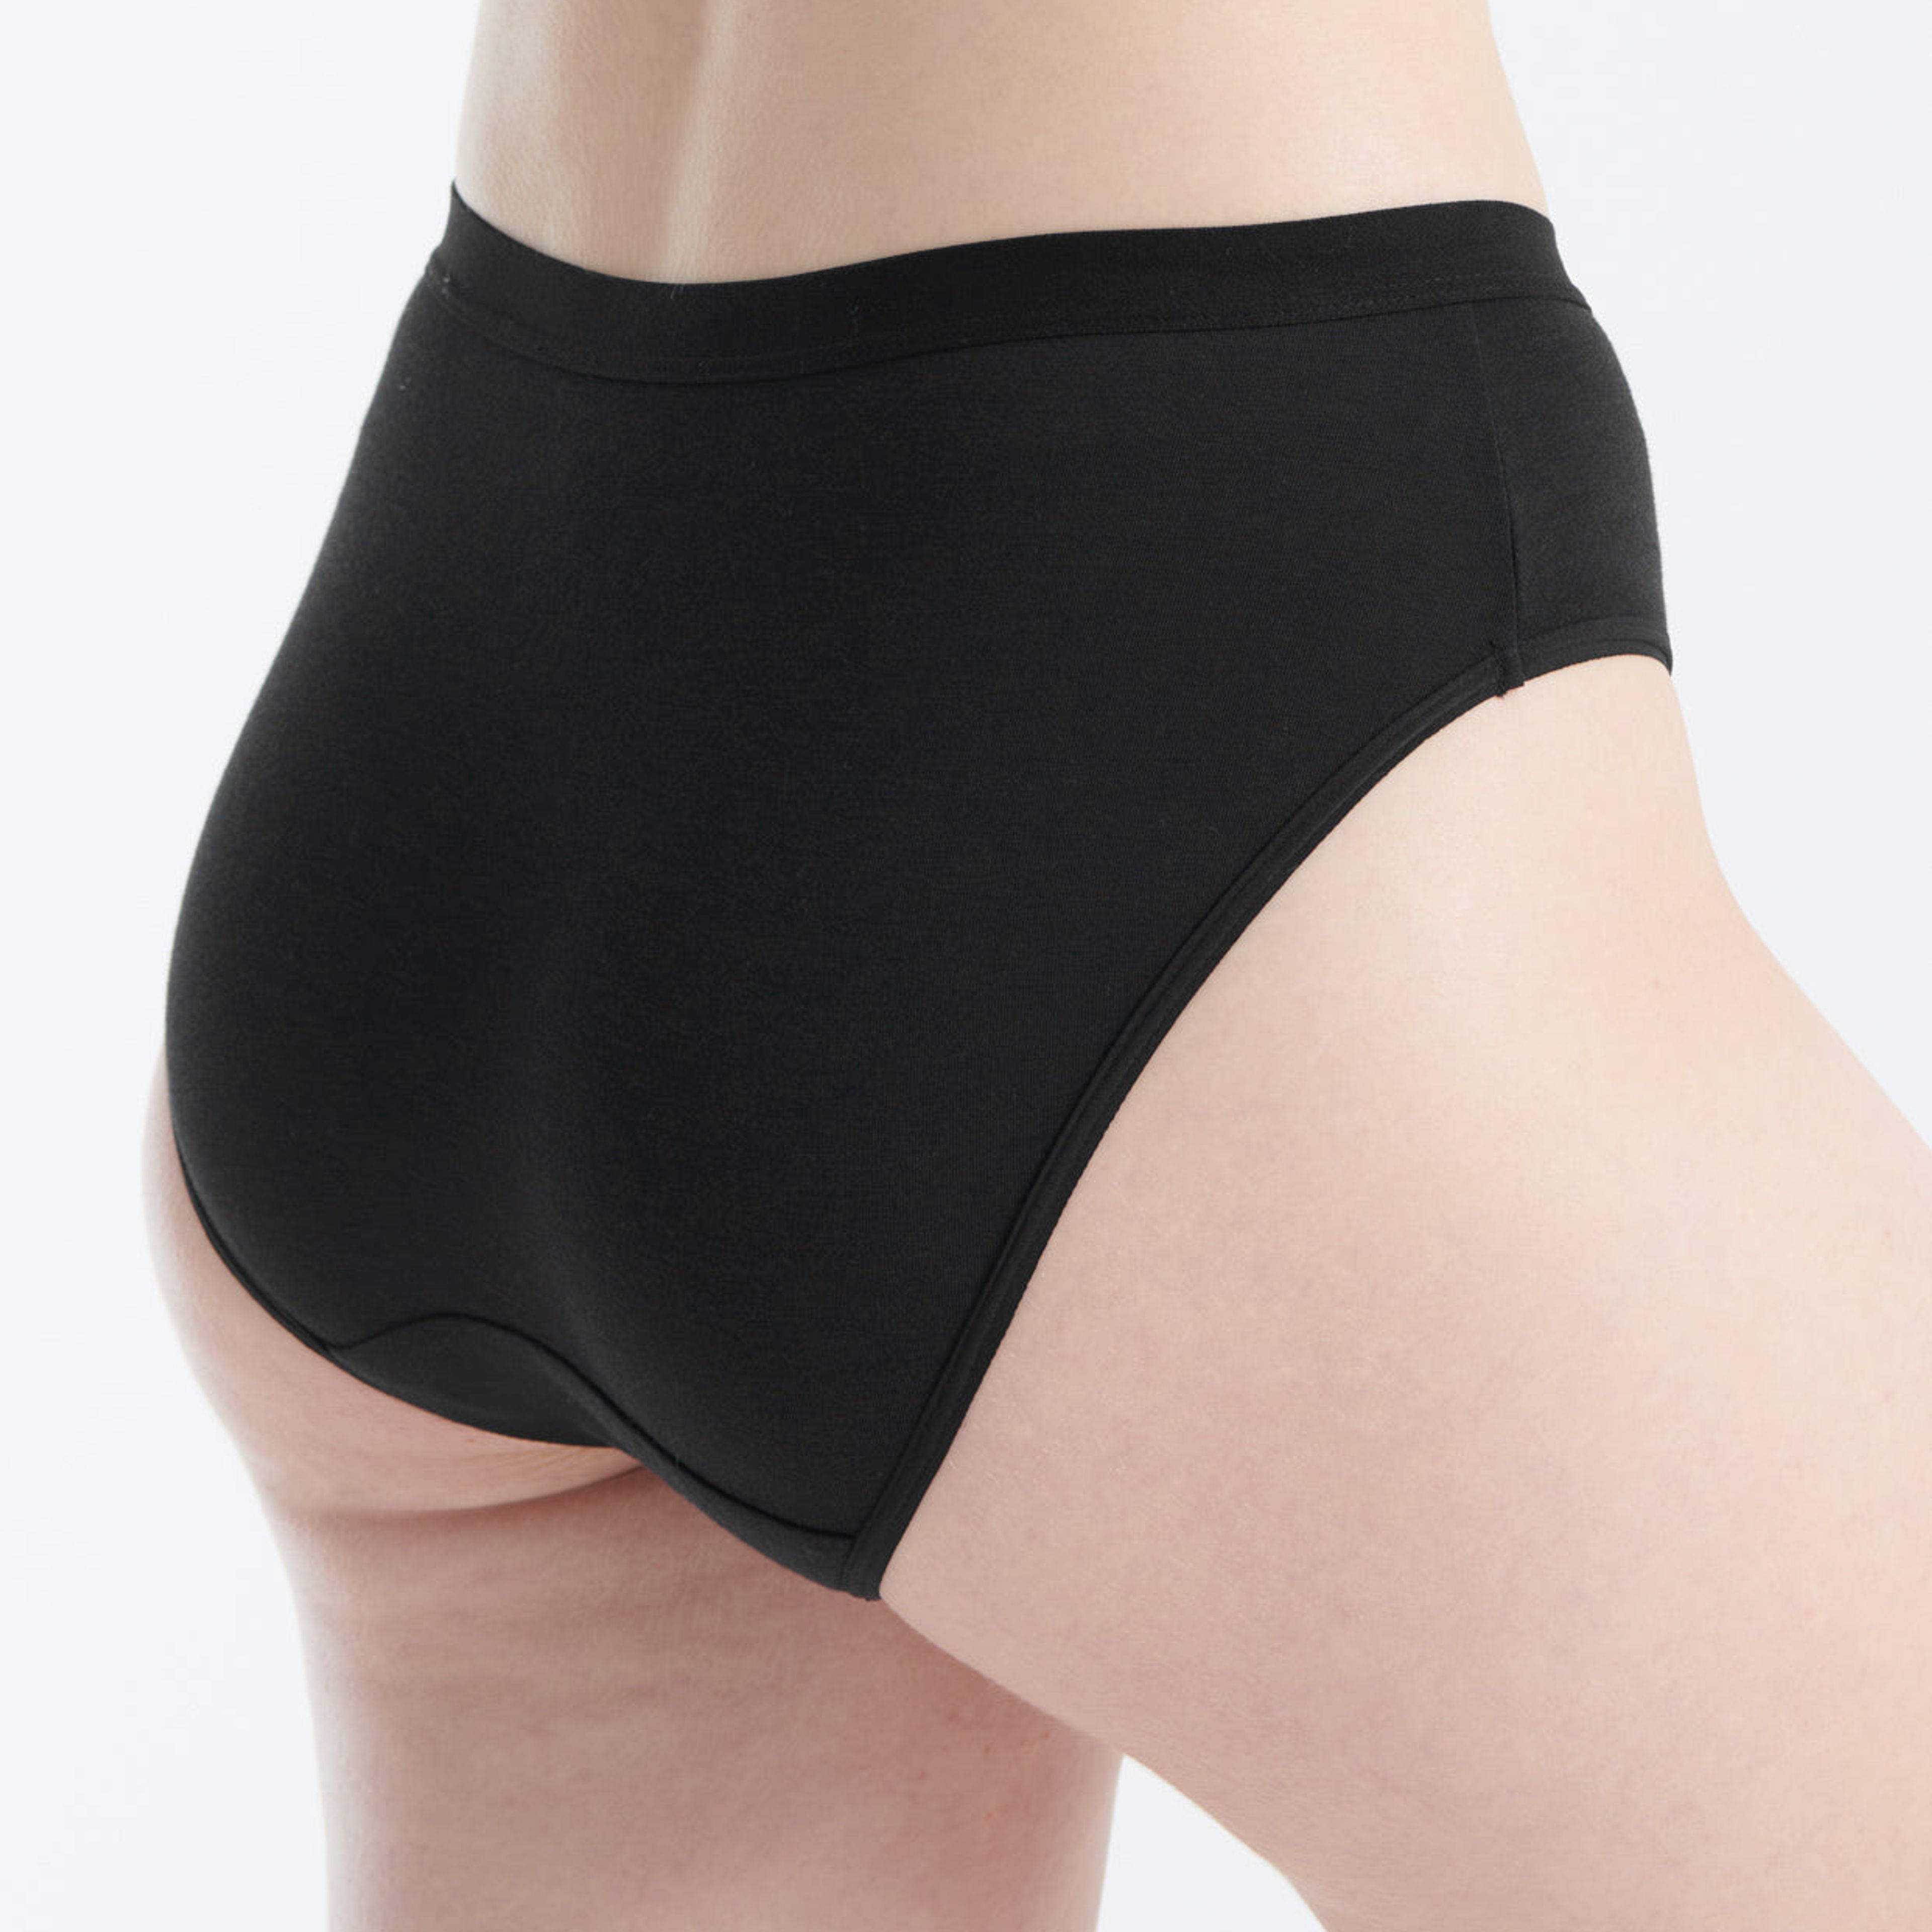 Saalt EveryWEAR Heavy Asorbency Brief Leak Proof Period Underwear